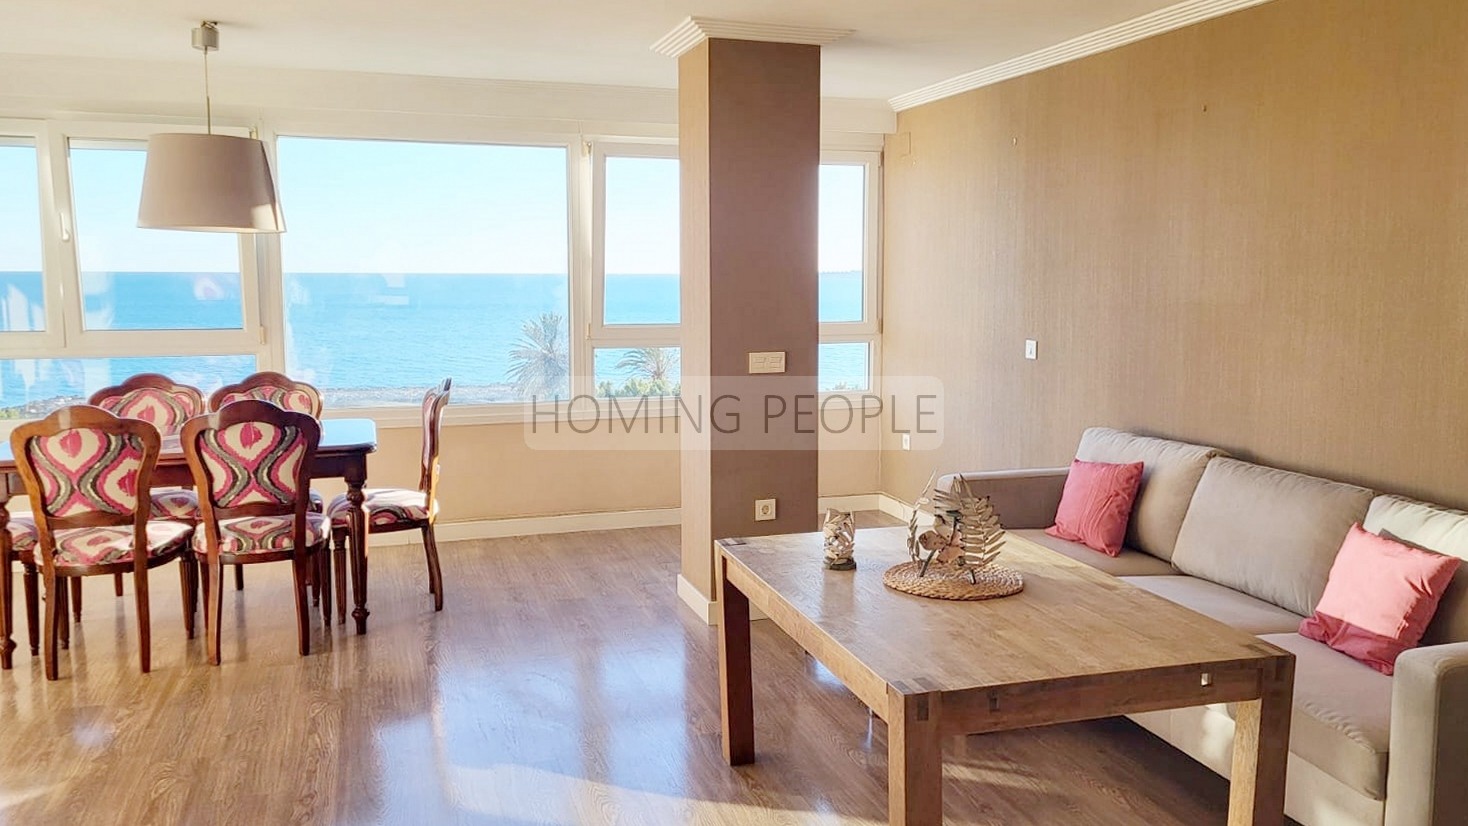 [DÉJÀ LOUÉ] Grand appartement ensoleillé avec vue imprenable sur la mer